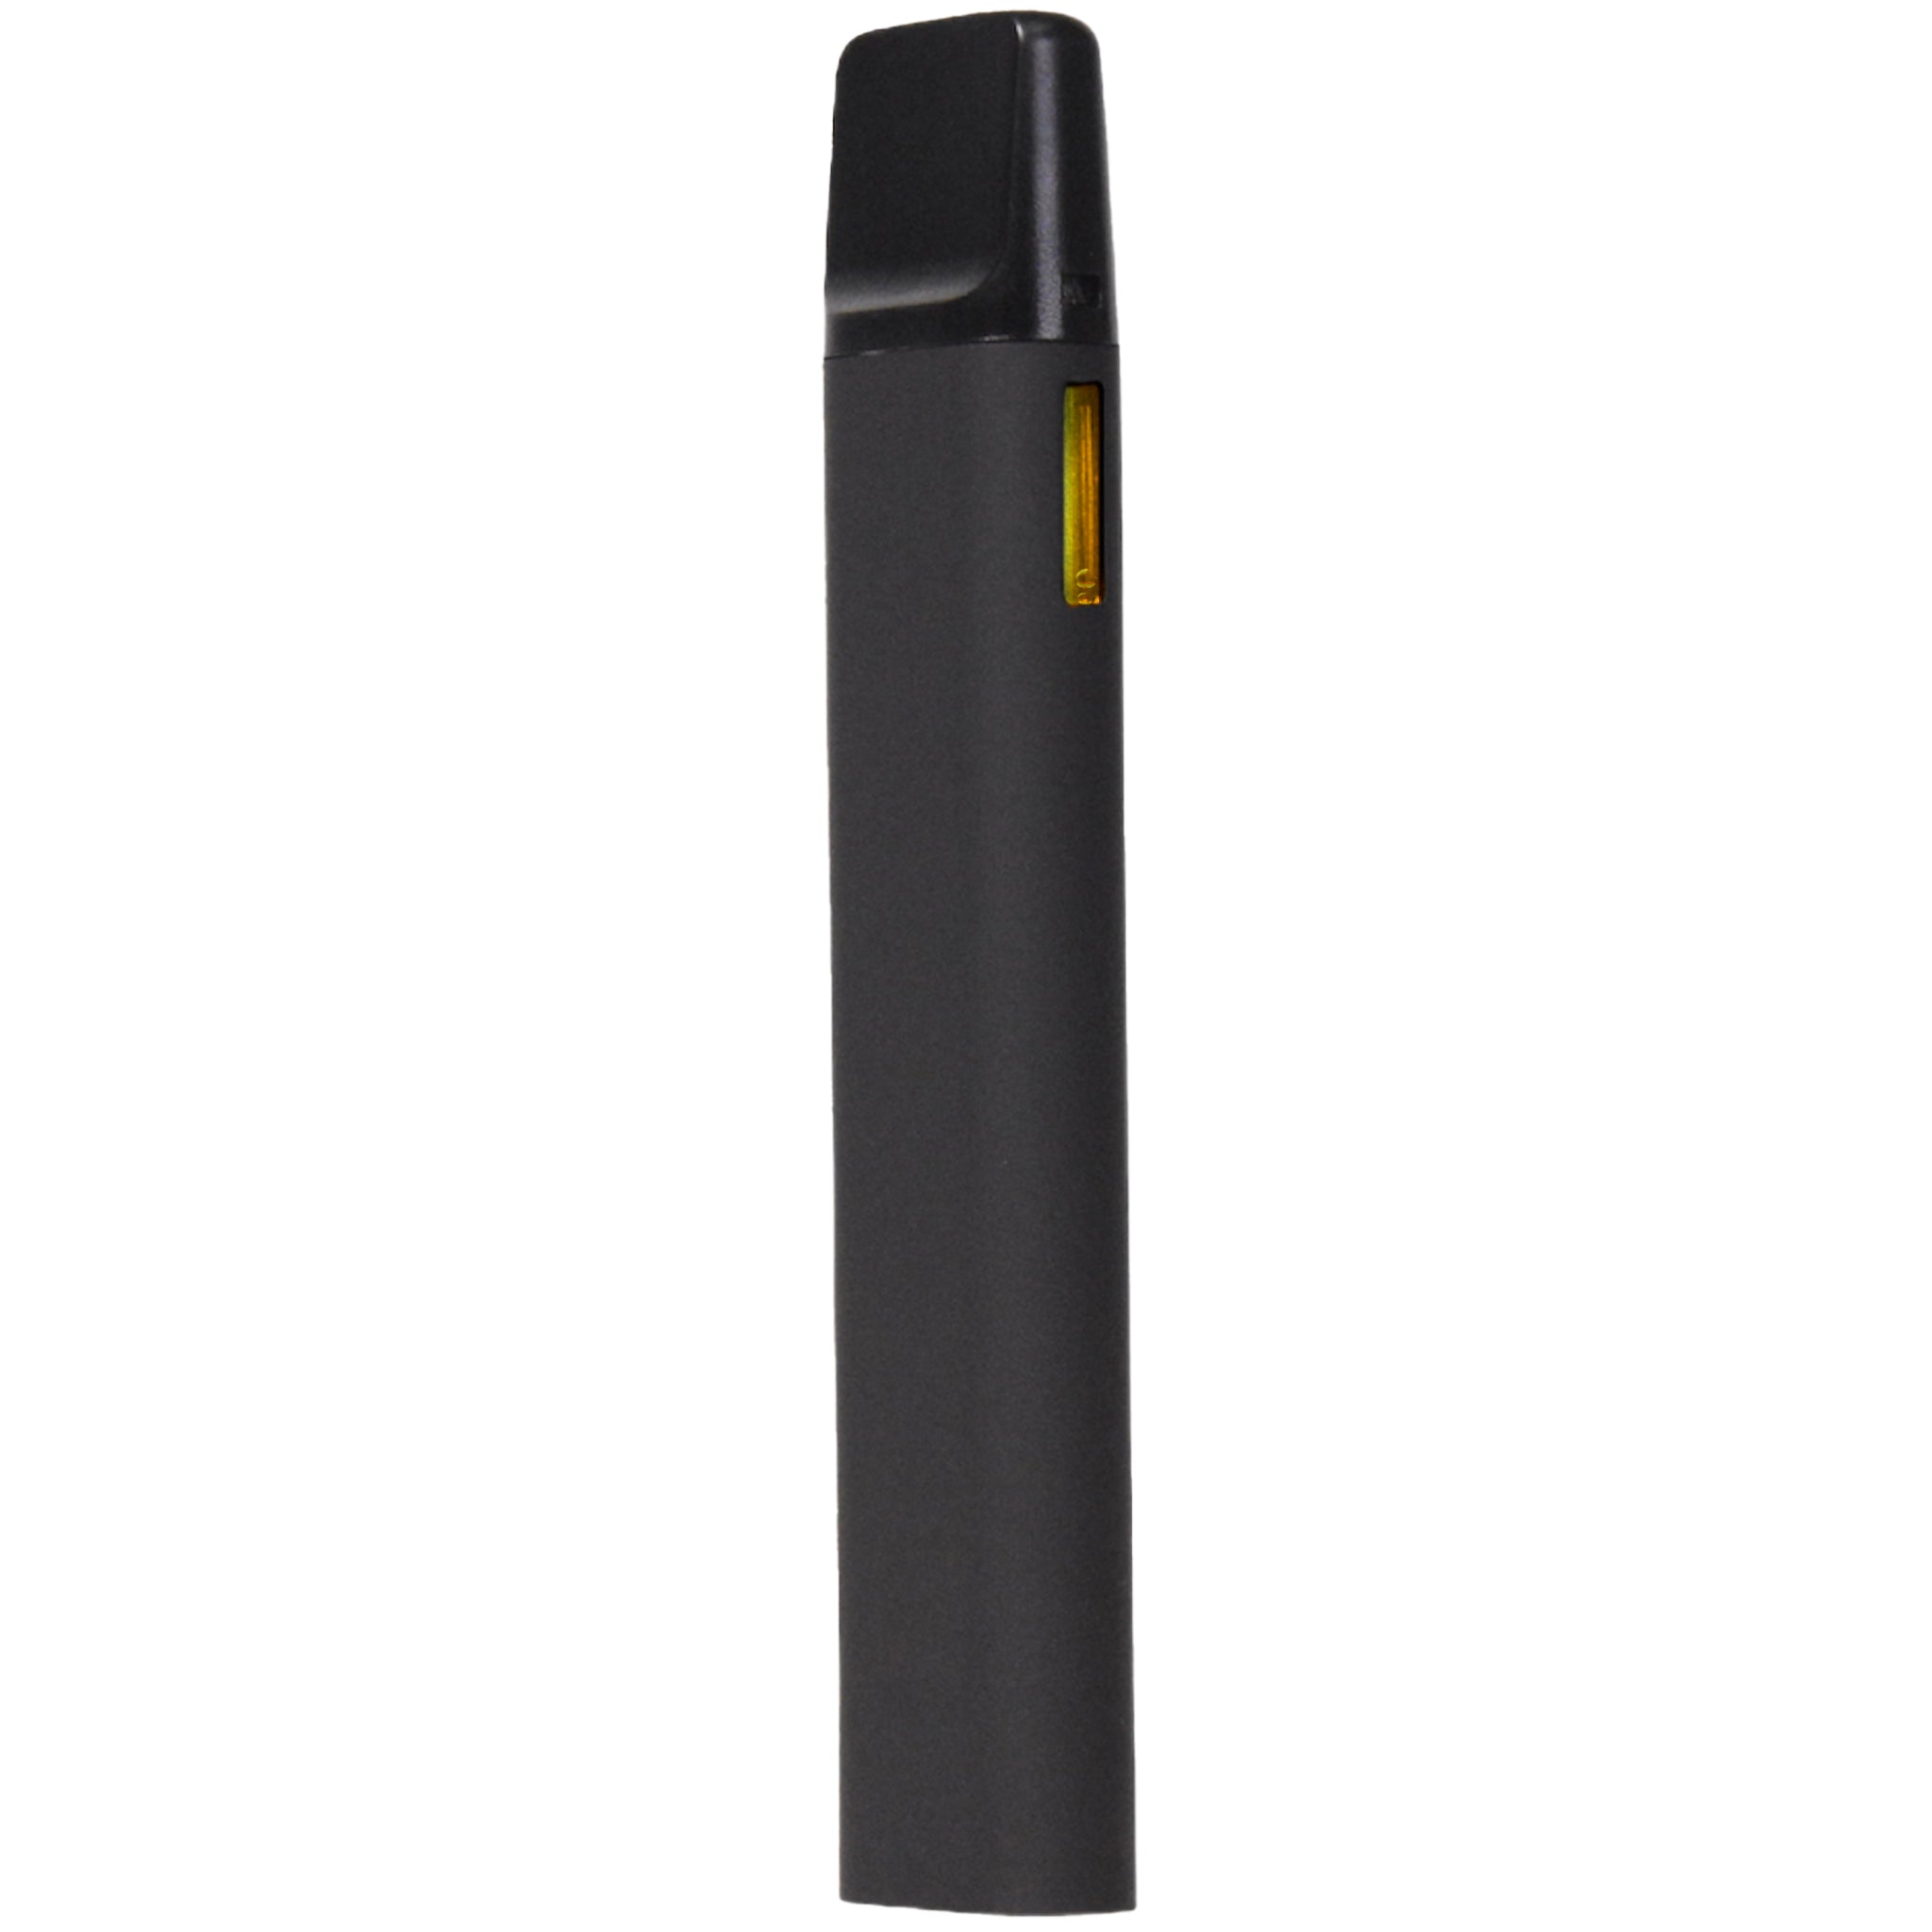 4th Gen 2mL Disposable Side Window-Disposable Vaporizers-Vape Pens Wholesale